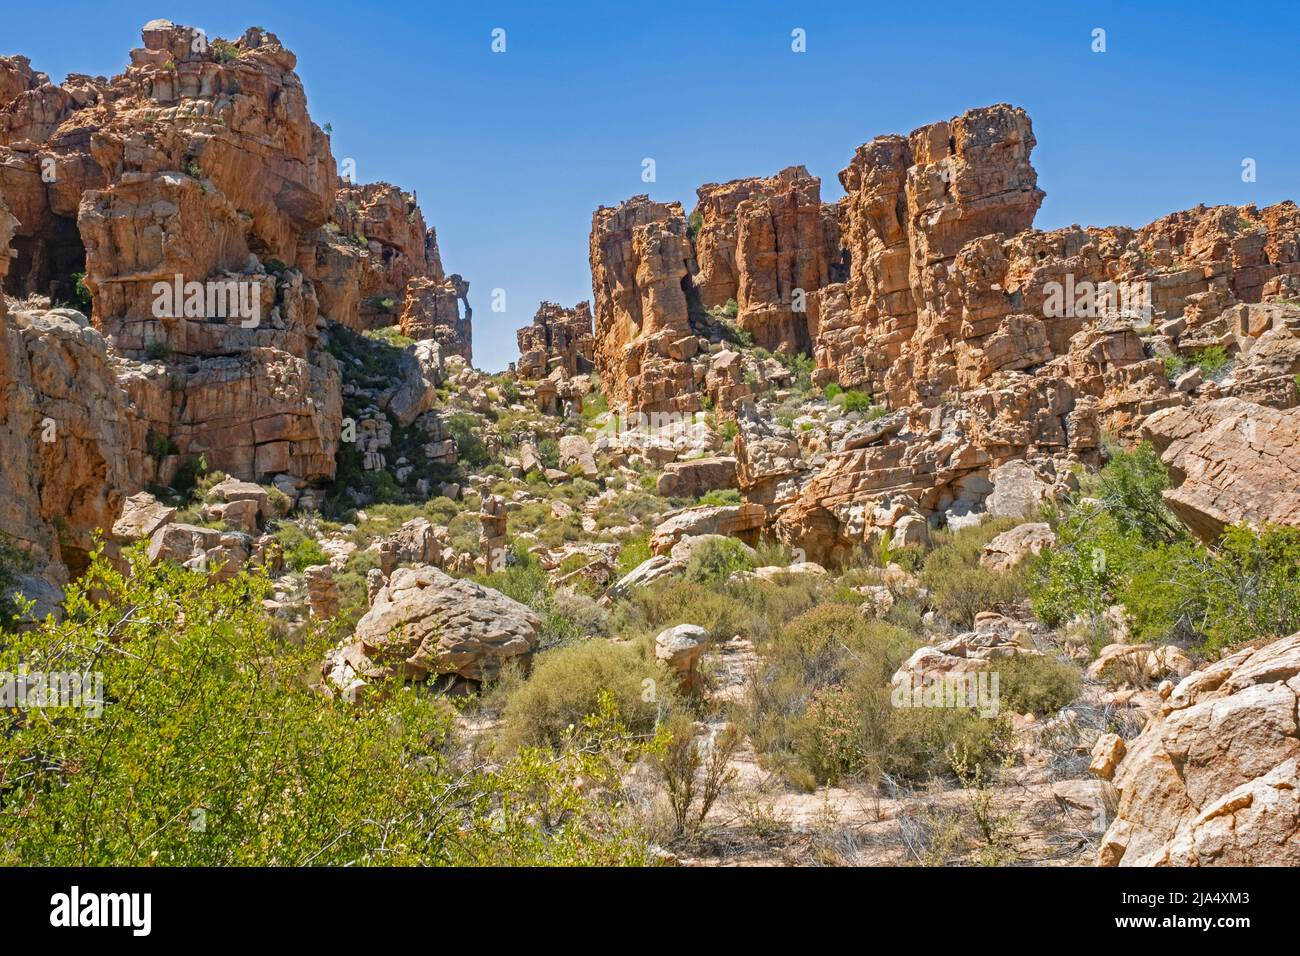 Formaciones rocosas de arenisca en Truitjieskraal en la Reserva Natural de Matjiesrivier, Cederberg Wilderness, Western Cape, Sudáfrica Foto de stock